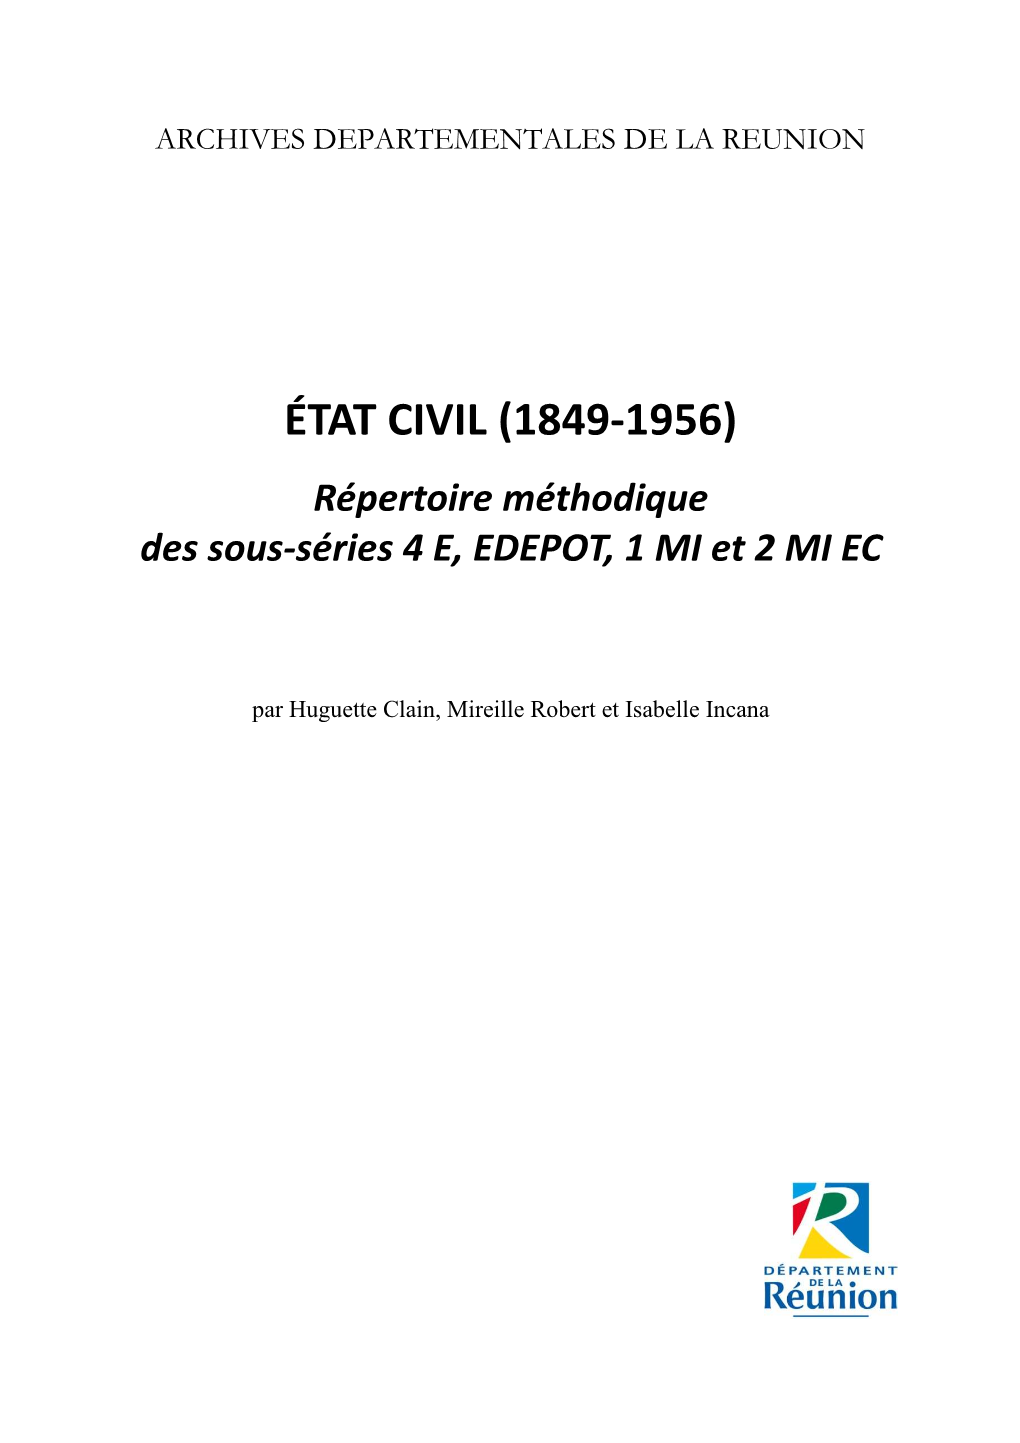 ÉTAT CIVIL (1849-1956) Répertoire Méthodique Des Sous-Séries 4 E, EDEPOT, 1 MI Et 2 MI EC